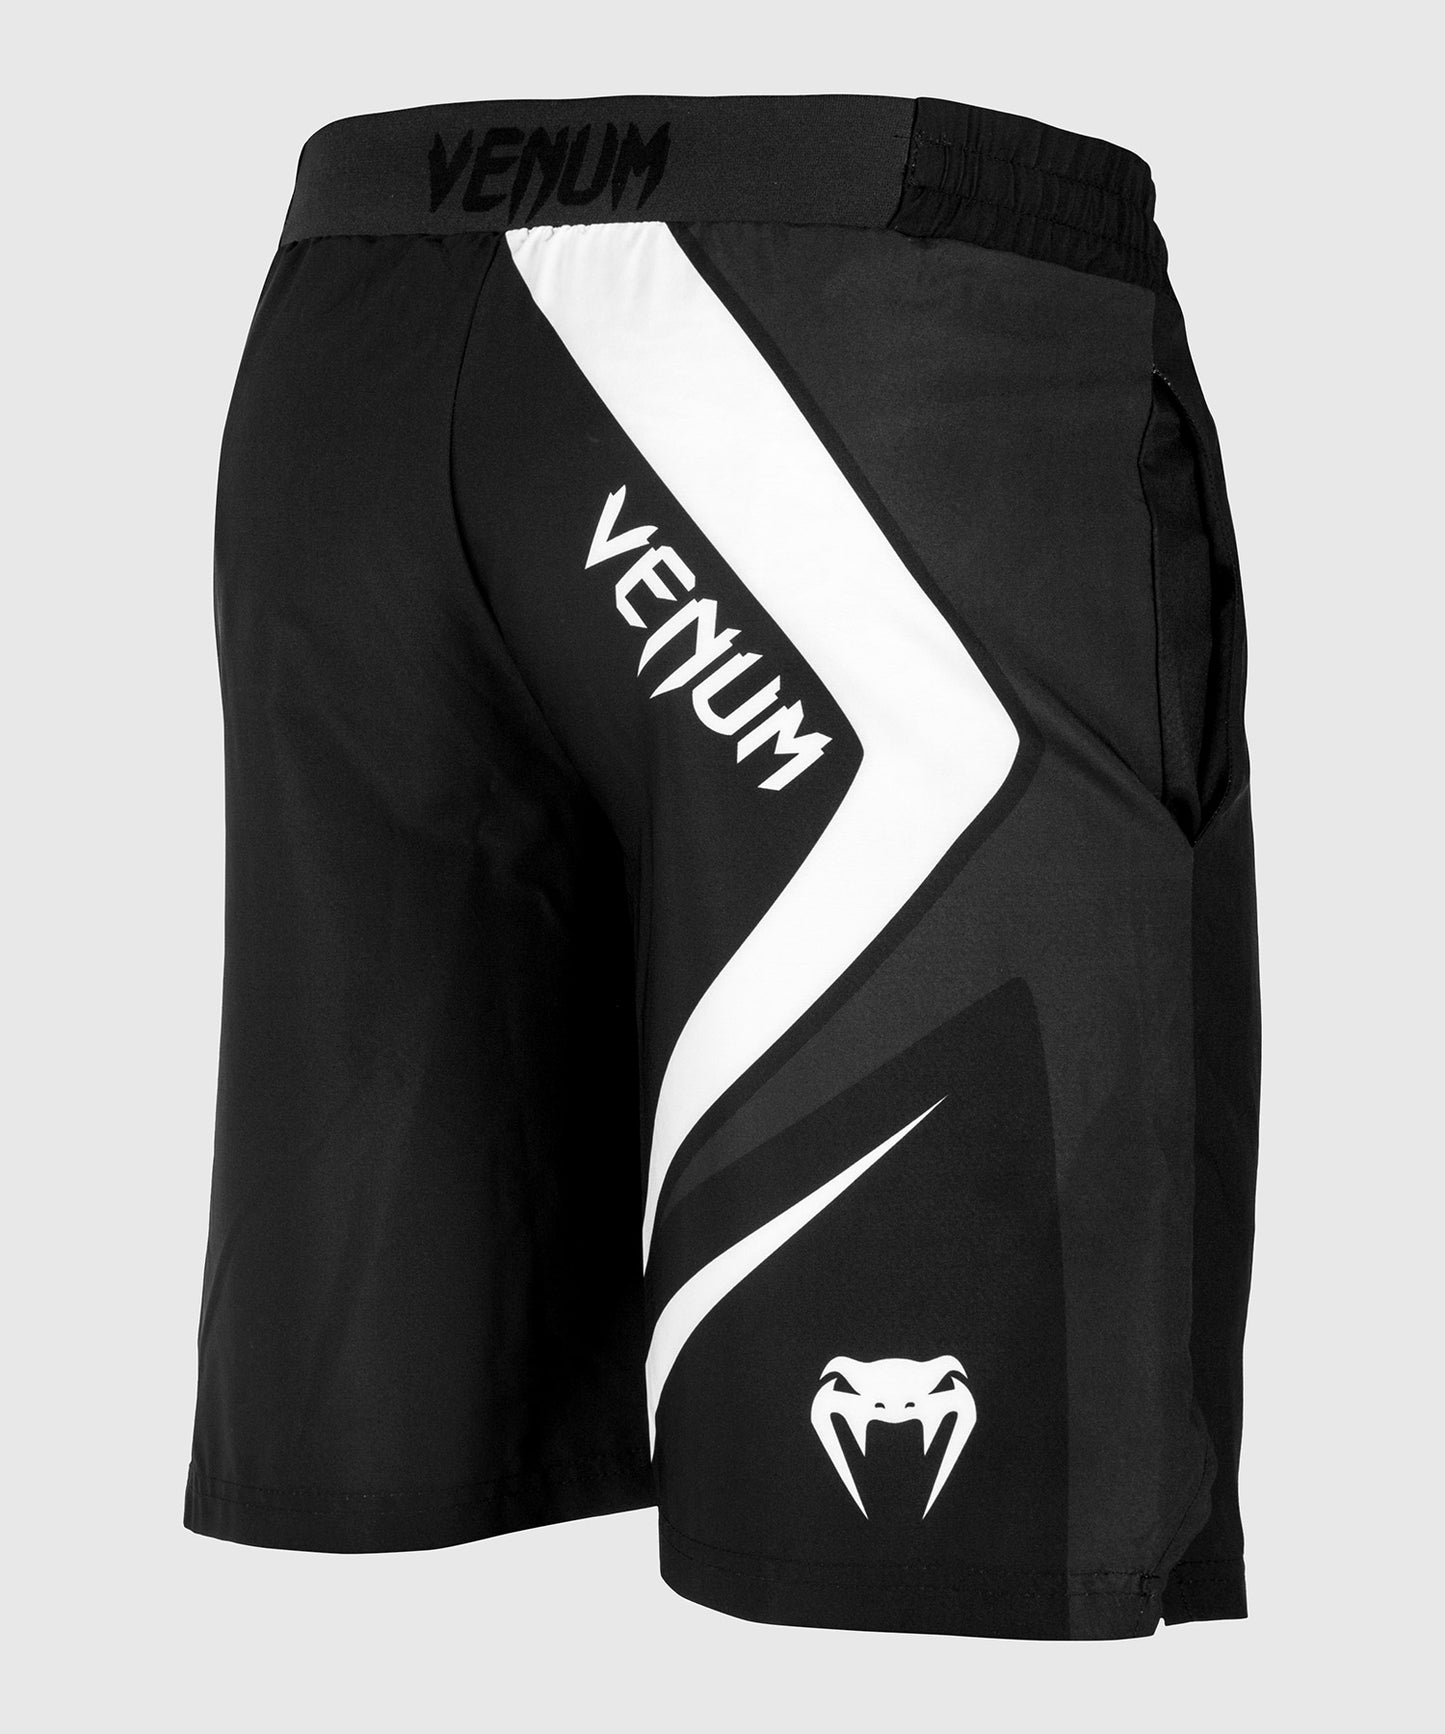 Pantalones cortos deportivos Venum Contender 4.0 - Negro/Gris-Blanco